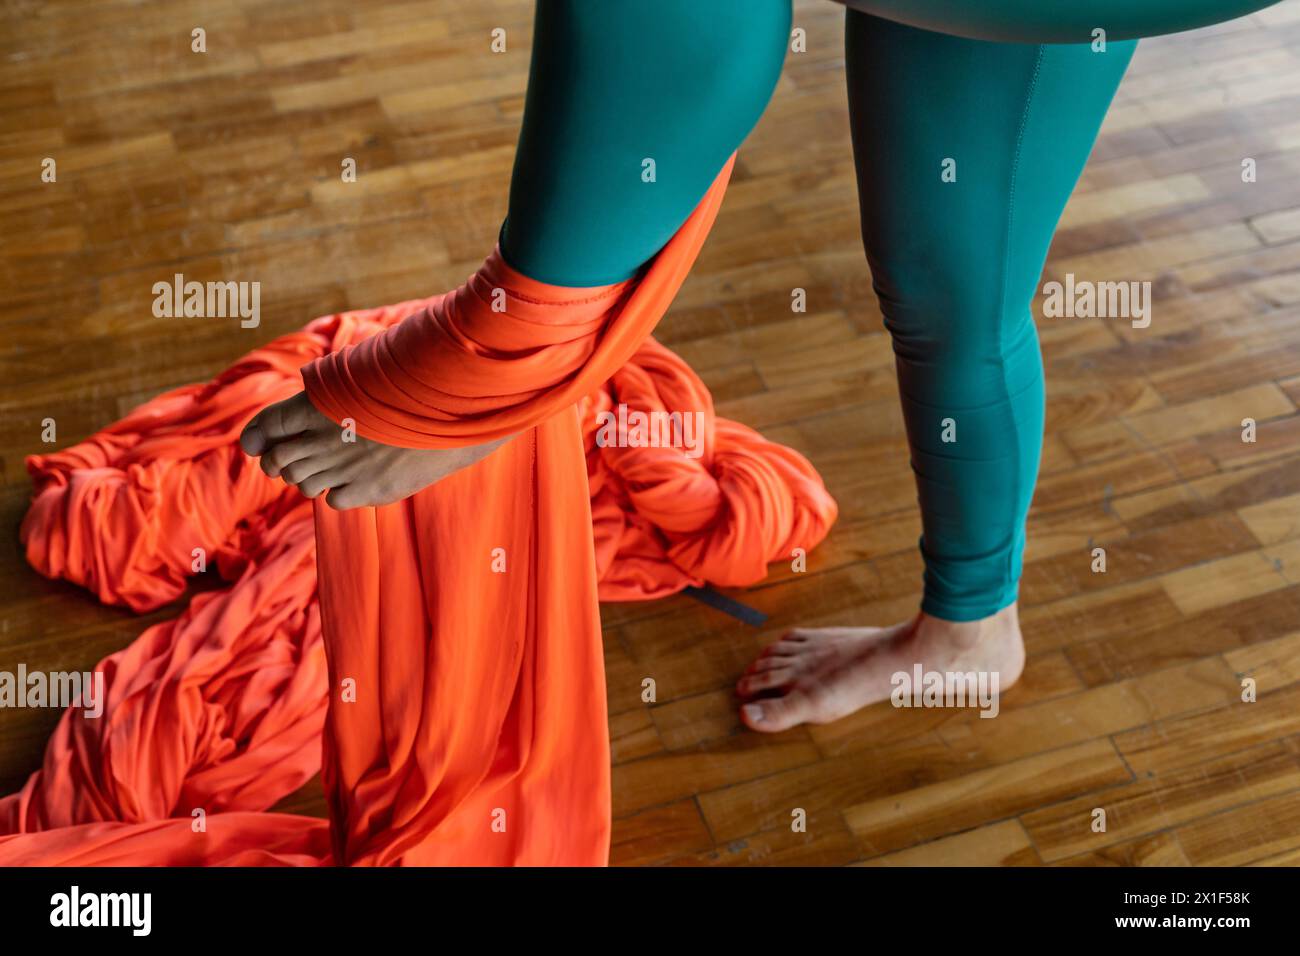 Junge lateinamerikanische Frau (33) in der Klasse mit Fluggymnastik-Stoffen lernt die Technik der Fußbindung, um sicher zu klettern. Yoga und Wellness Concep Stockfoto